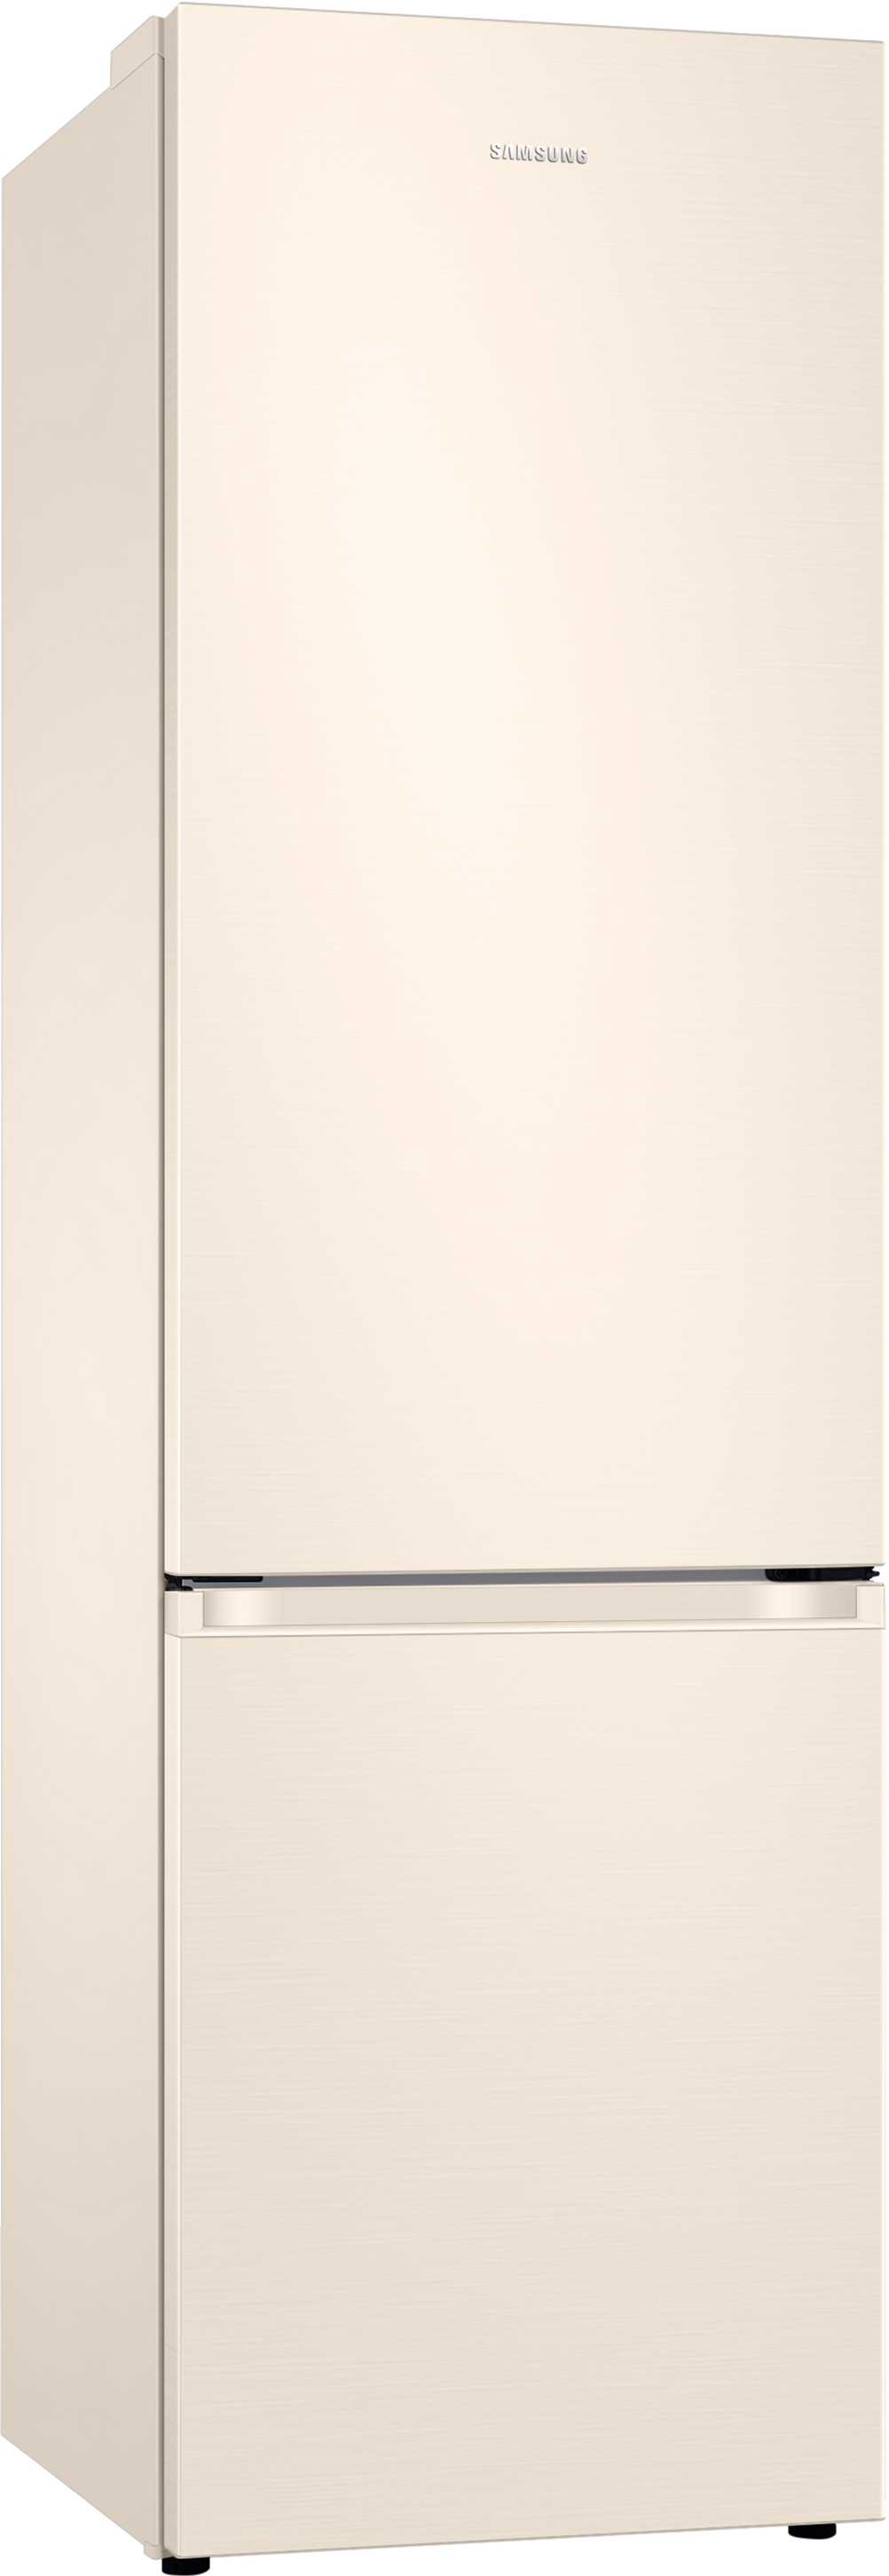 Холодильник Samsung RB38T603FEL/UA отзывы - изображения 5